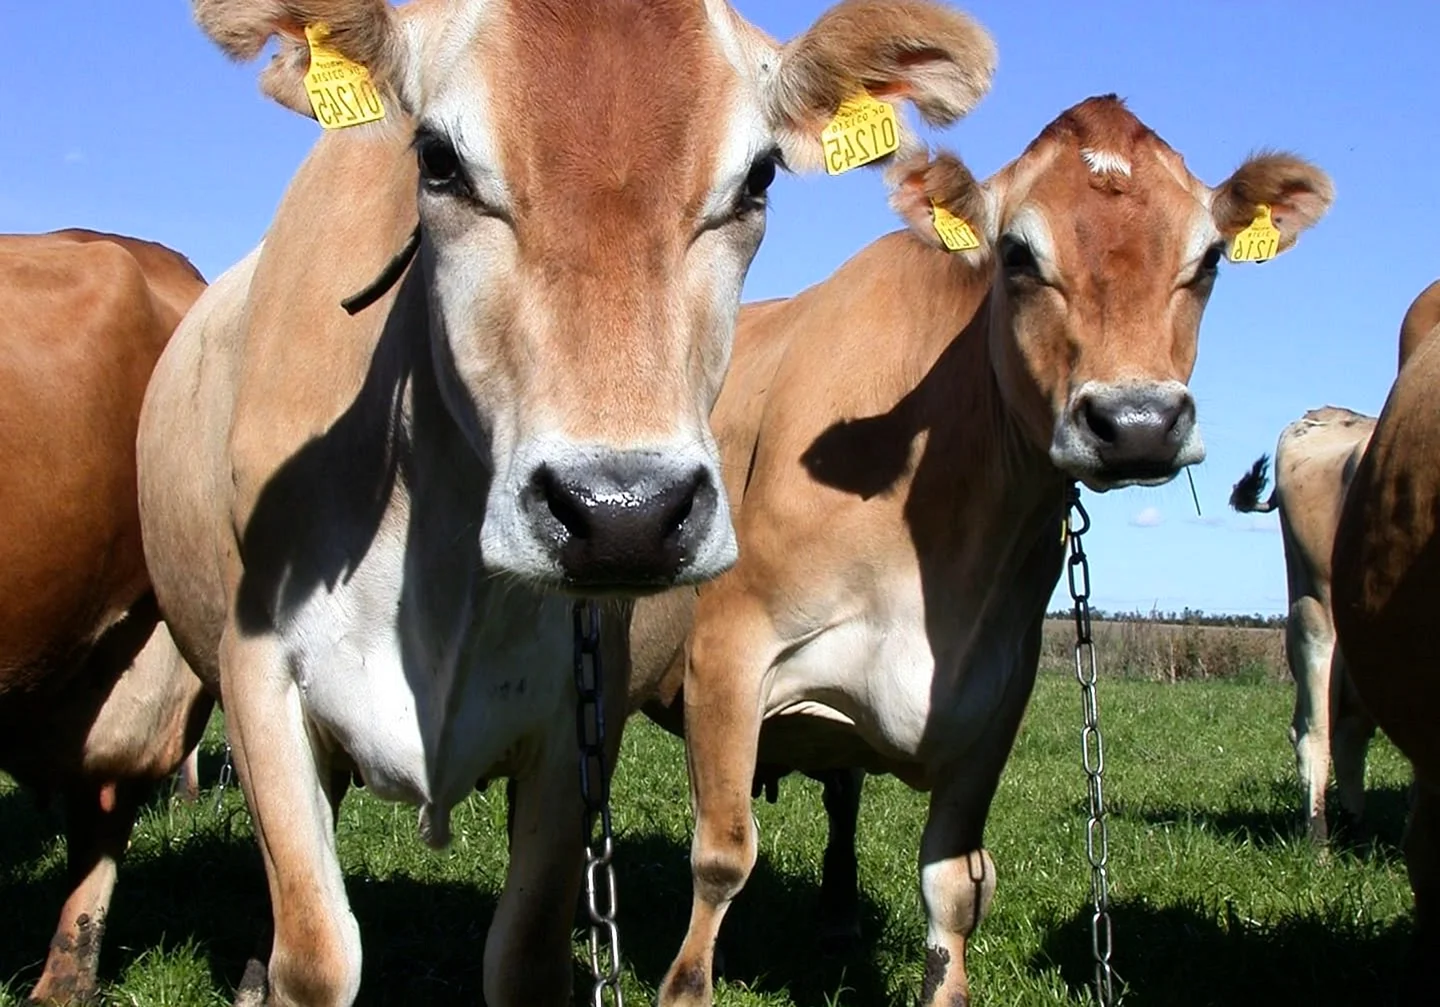 Джерсейская молочная порода коров